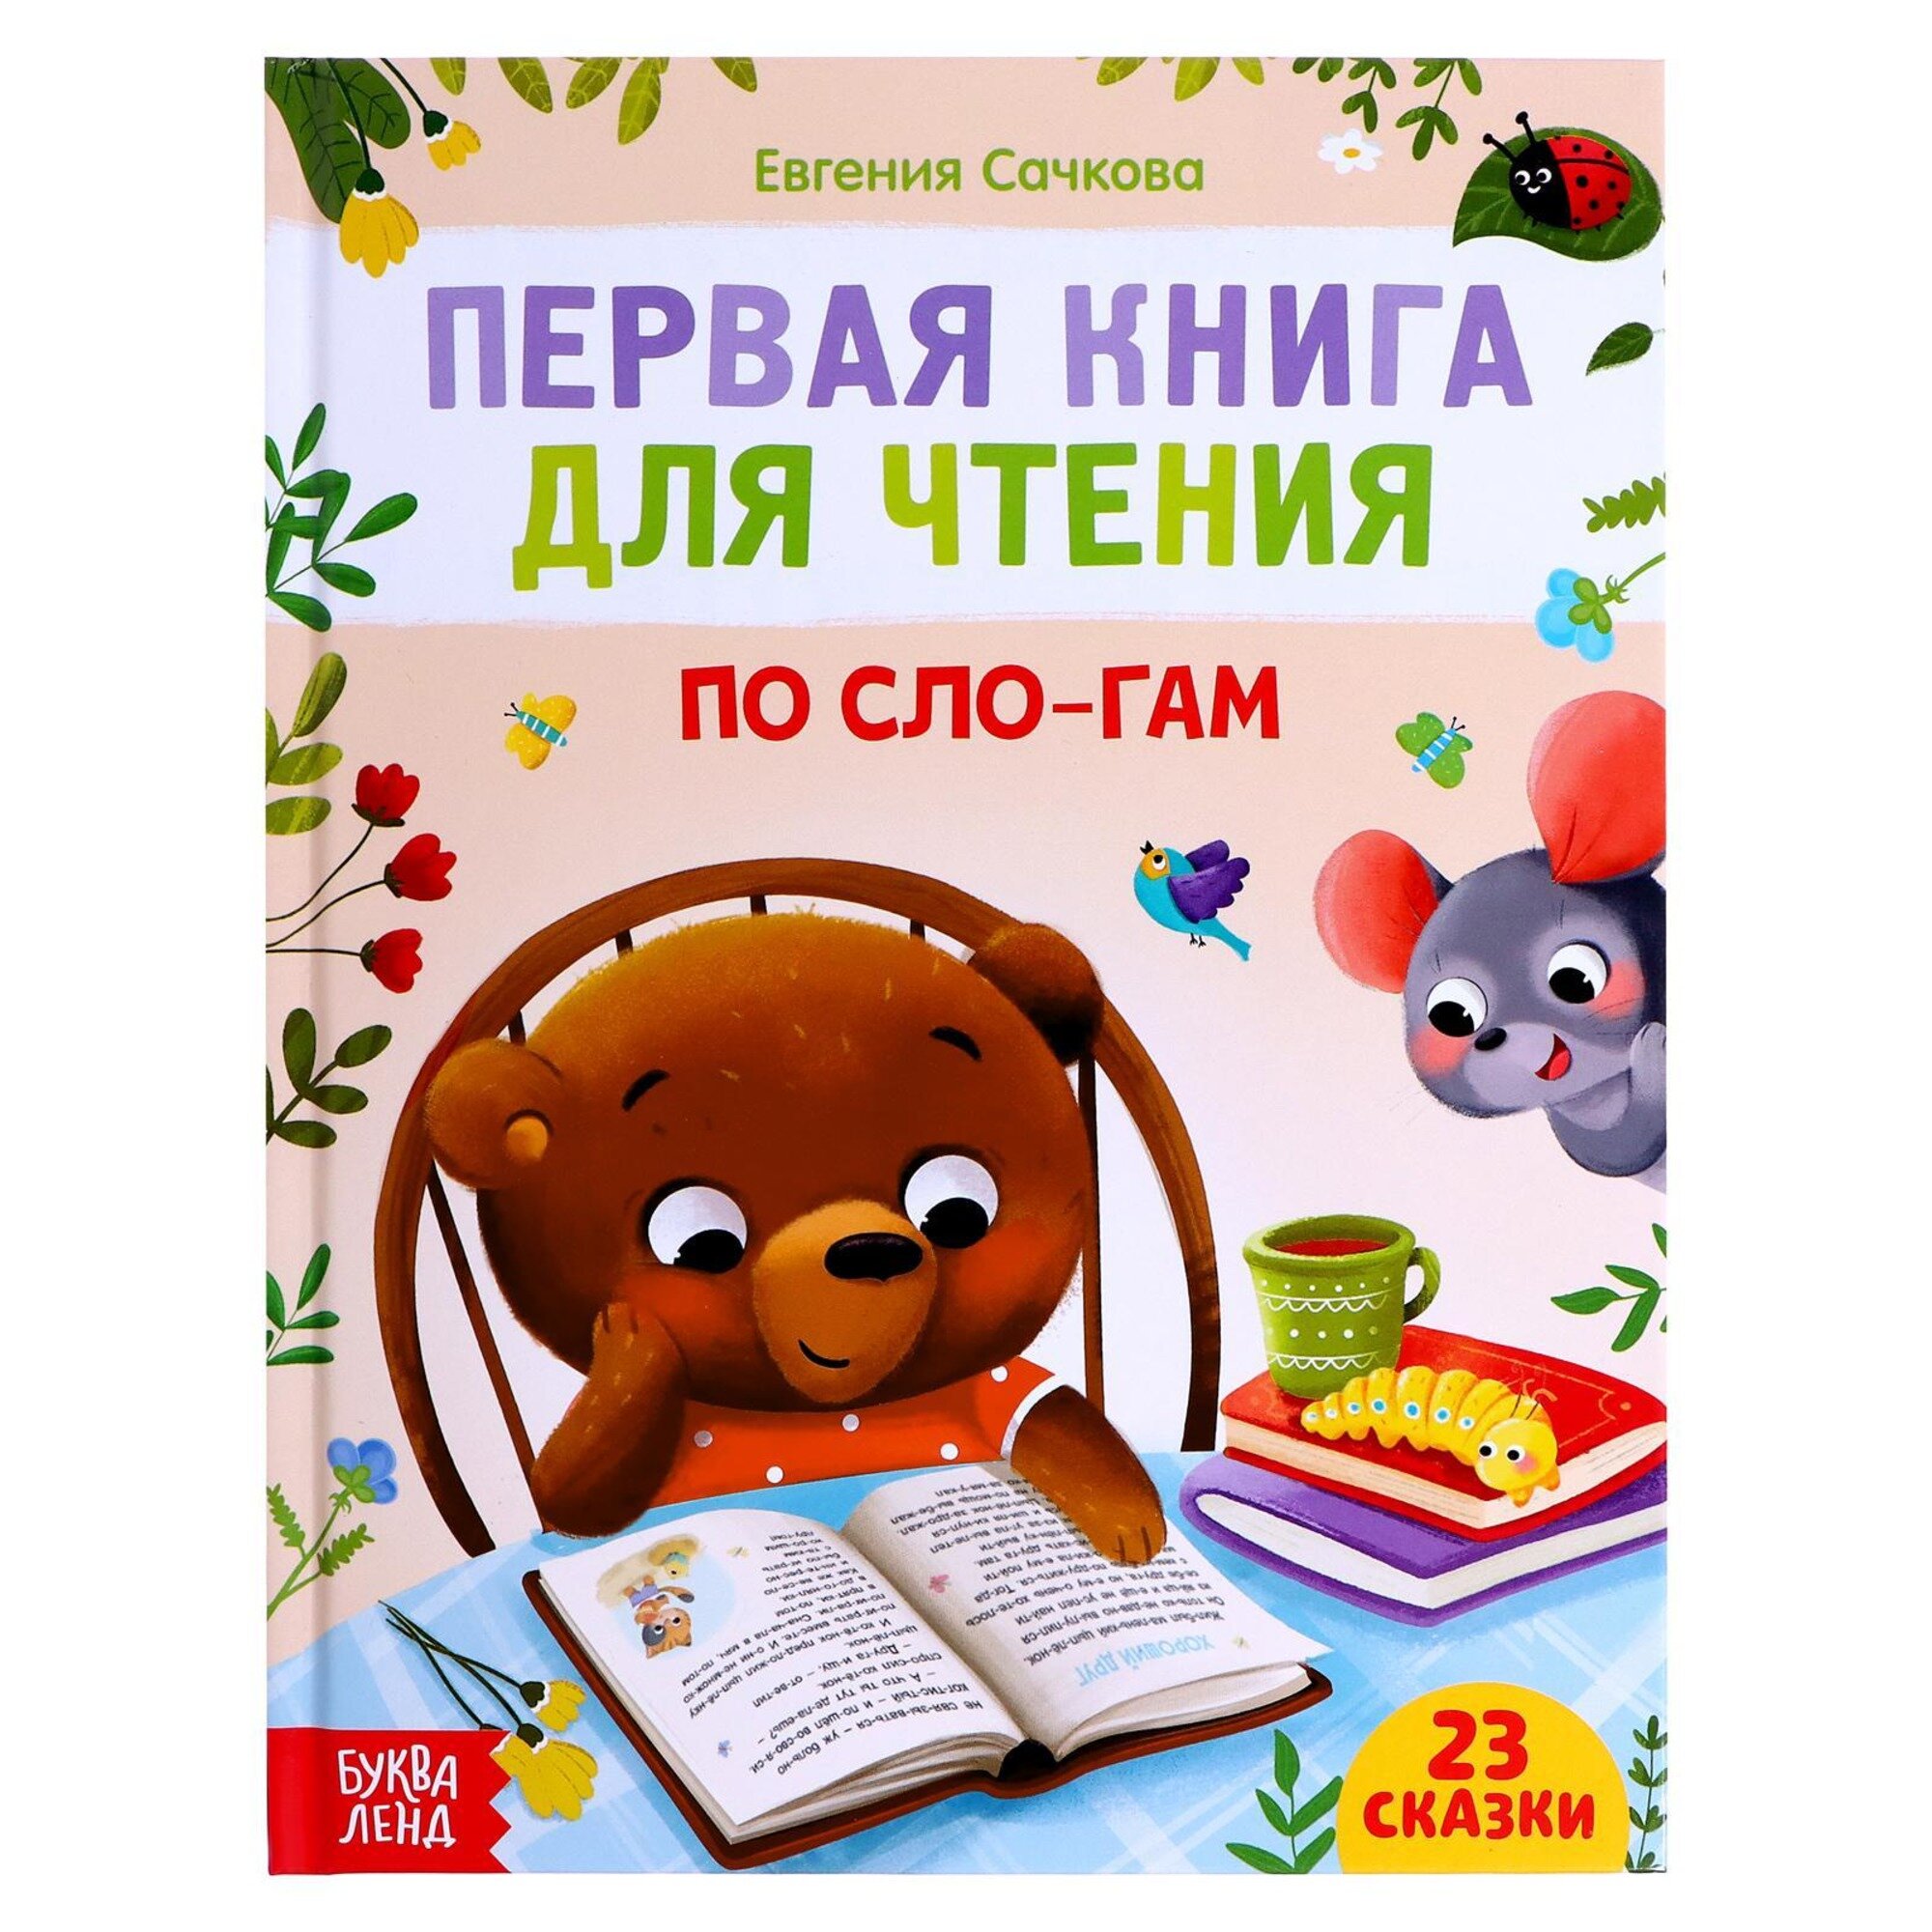 Обучающая книга "Первая книга для чтения по слогам", 23 сказки, 48 страниц, для детей и малышей